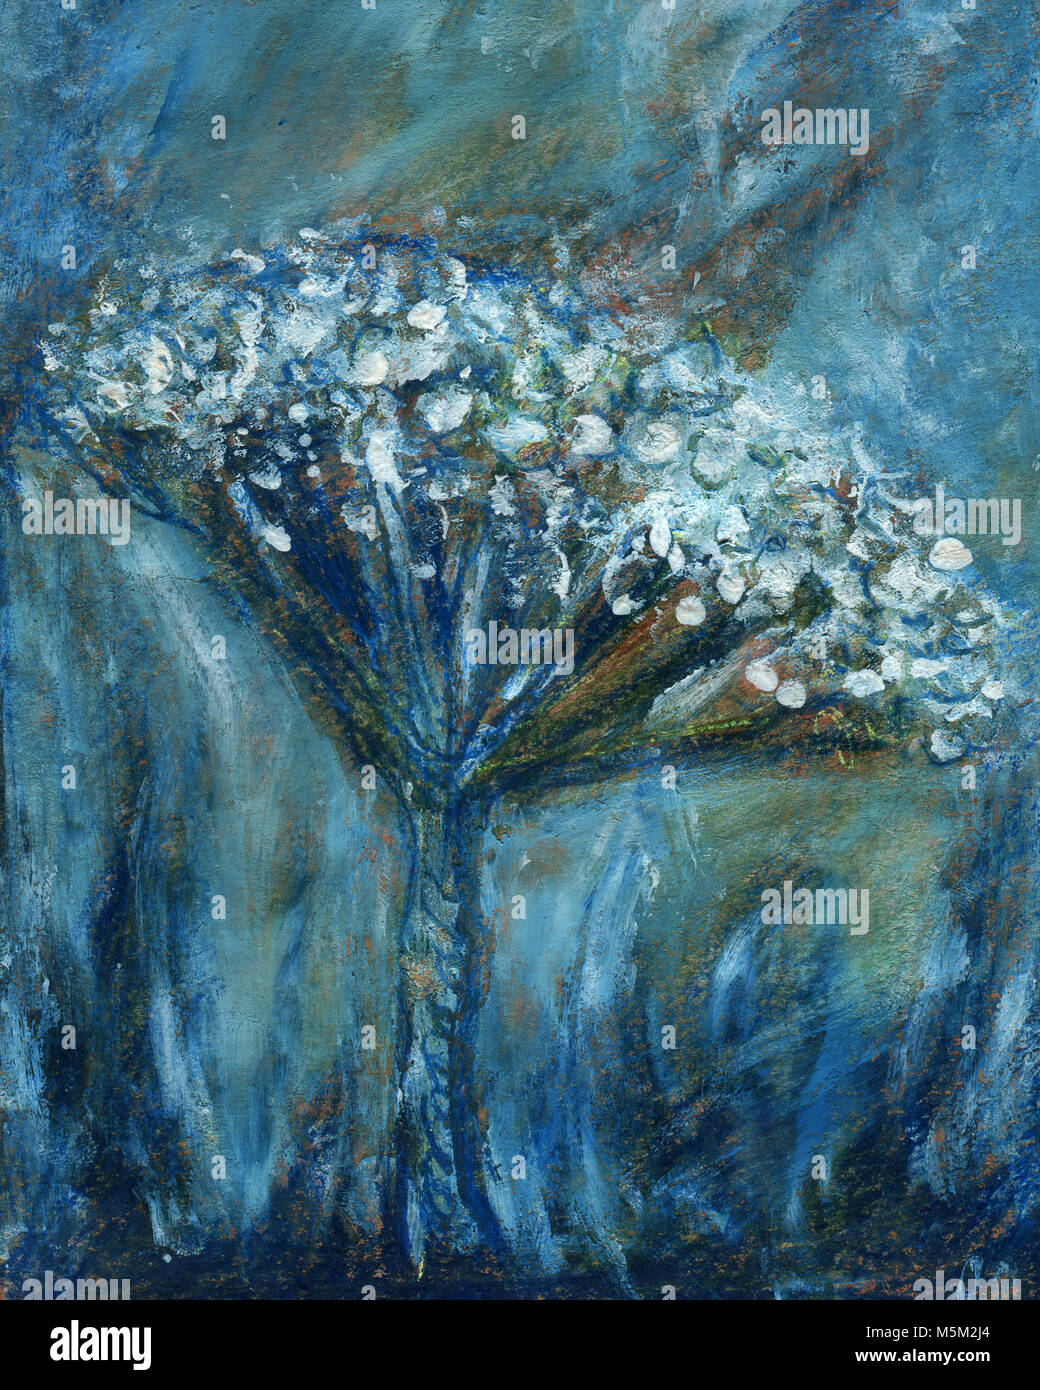 Abstrakte Blumenmalerei. Künstlerische Gemälde für den Hintergrund. Blau-weiße Textur auf grunge Papier Hintergrund. Von Hand bemalt mit Blumen. Stockfoto